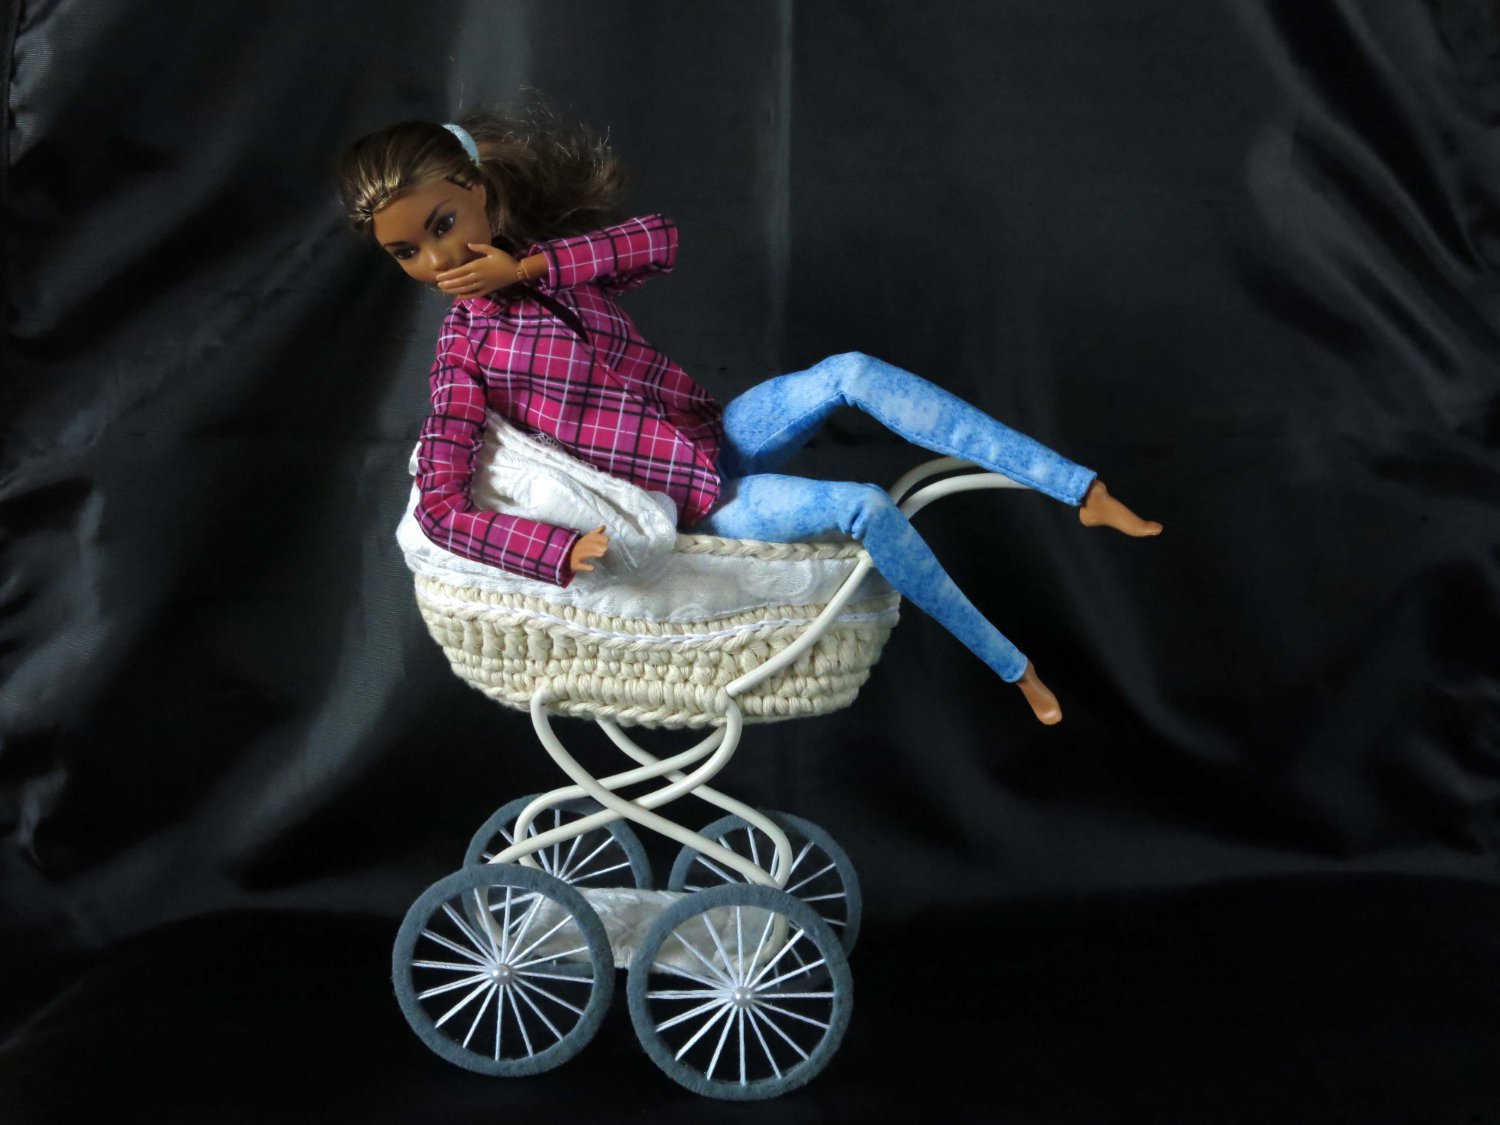 Как сделать люльку для куклы своими руками: Мастер-класс смотреть онлайн: Мастер-класс по шитью люльки-переноски для куклы